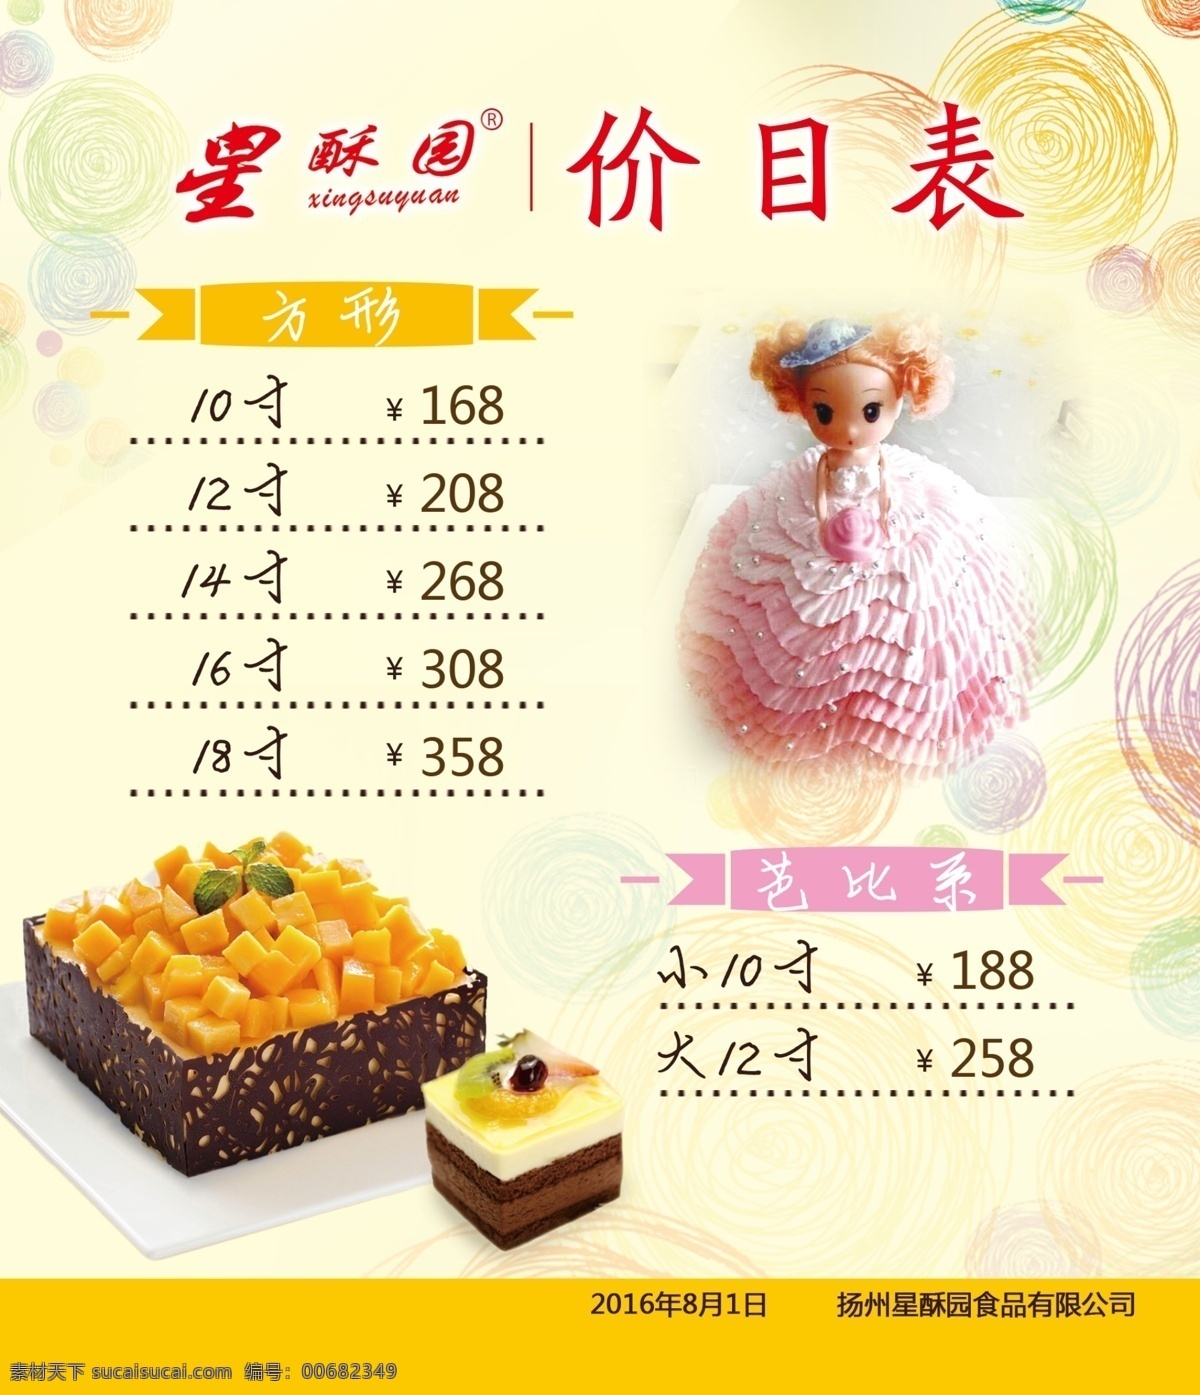 价目表 星酥园 方形水果蛋糕 芭比蛋糕 淡黄色背景